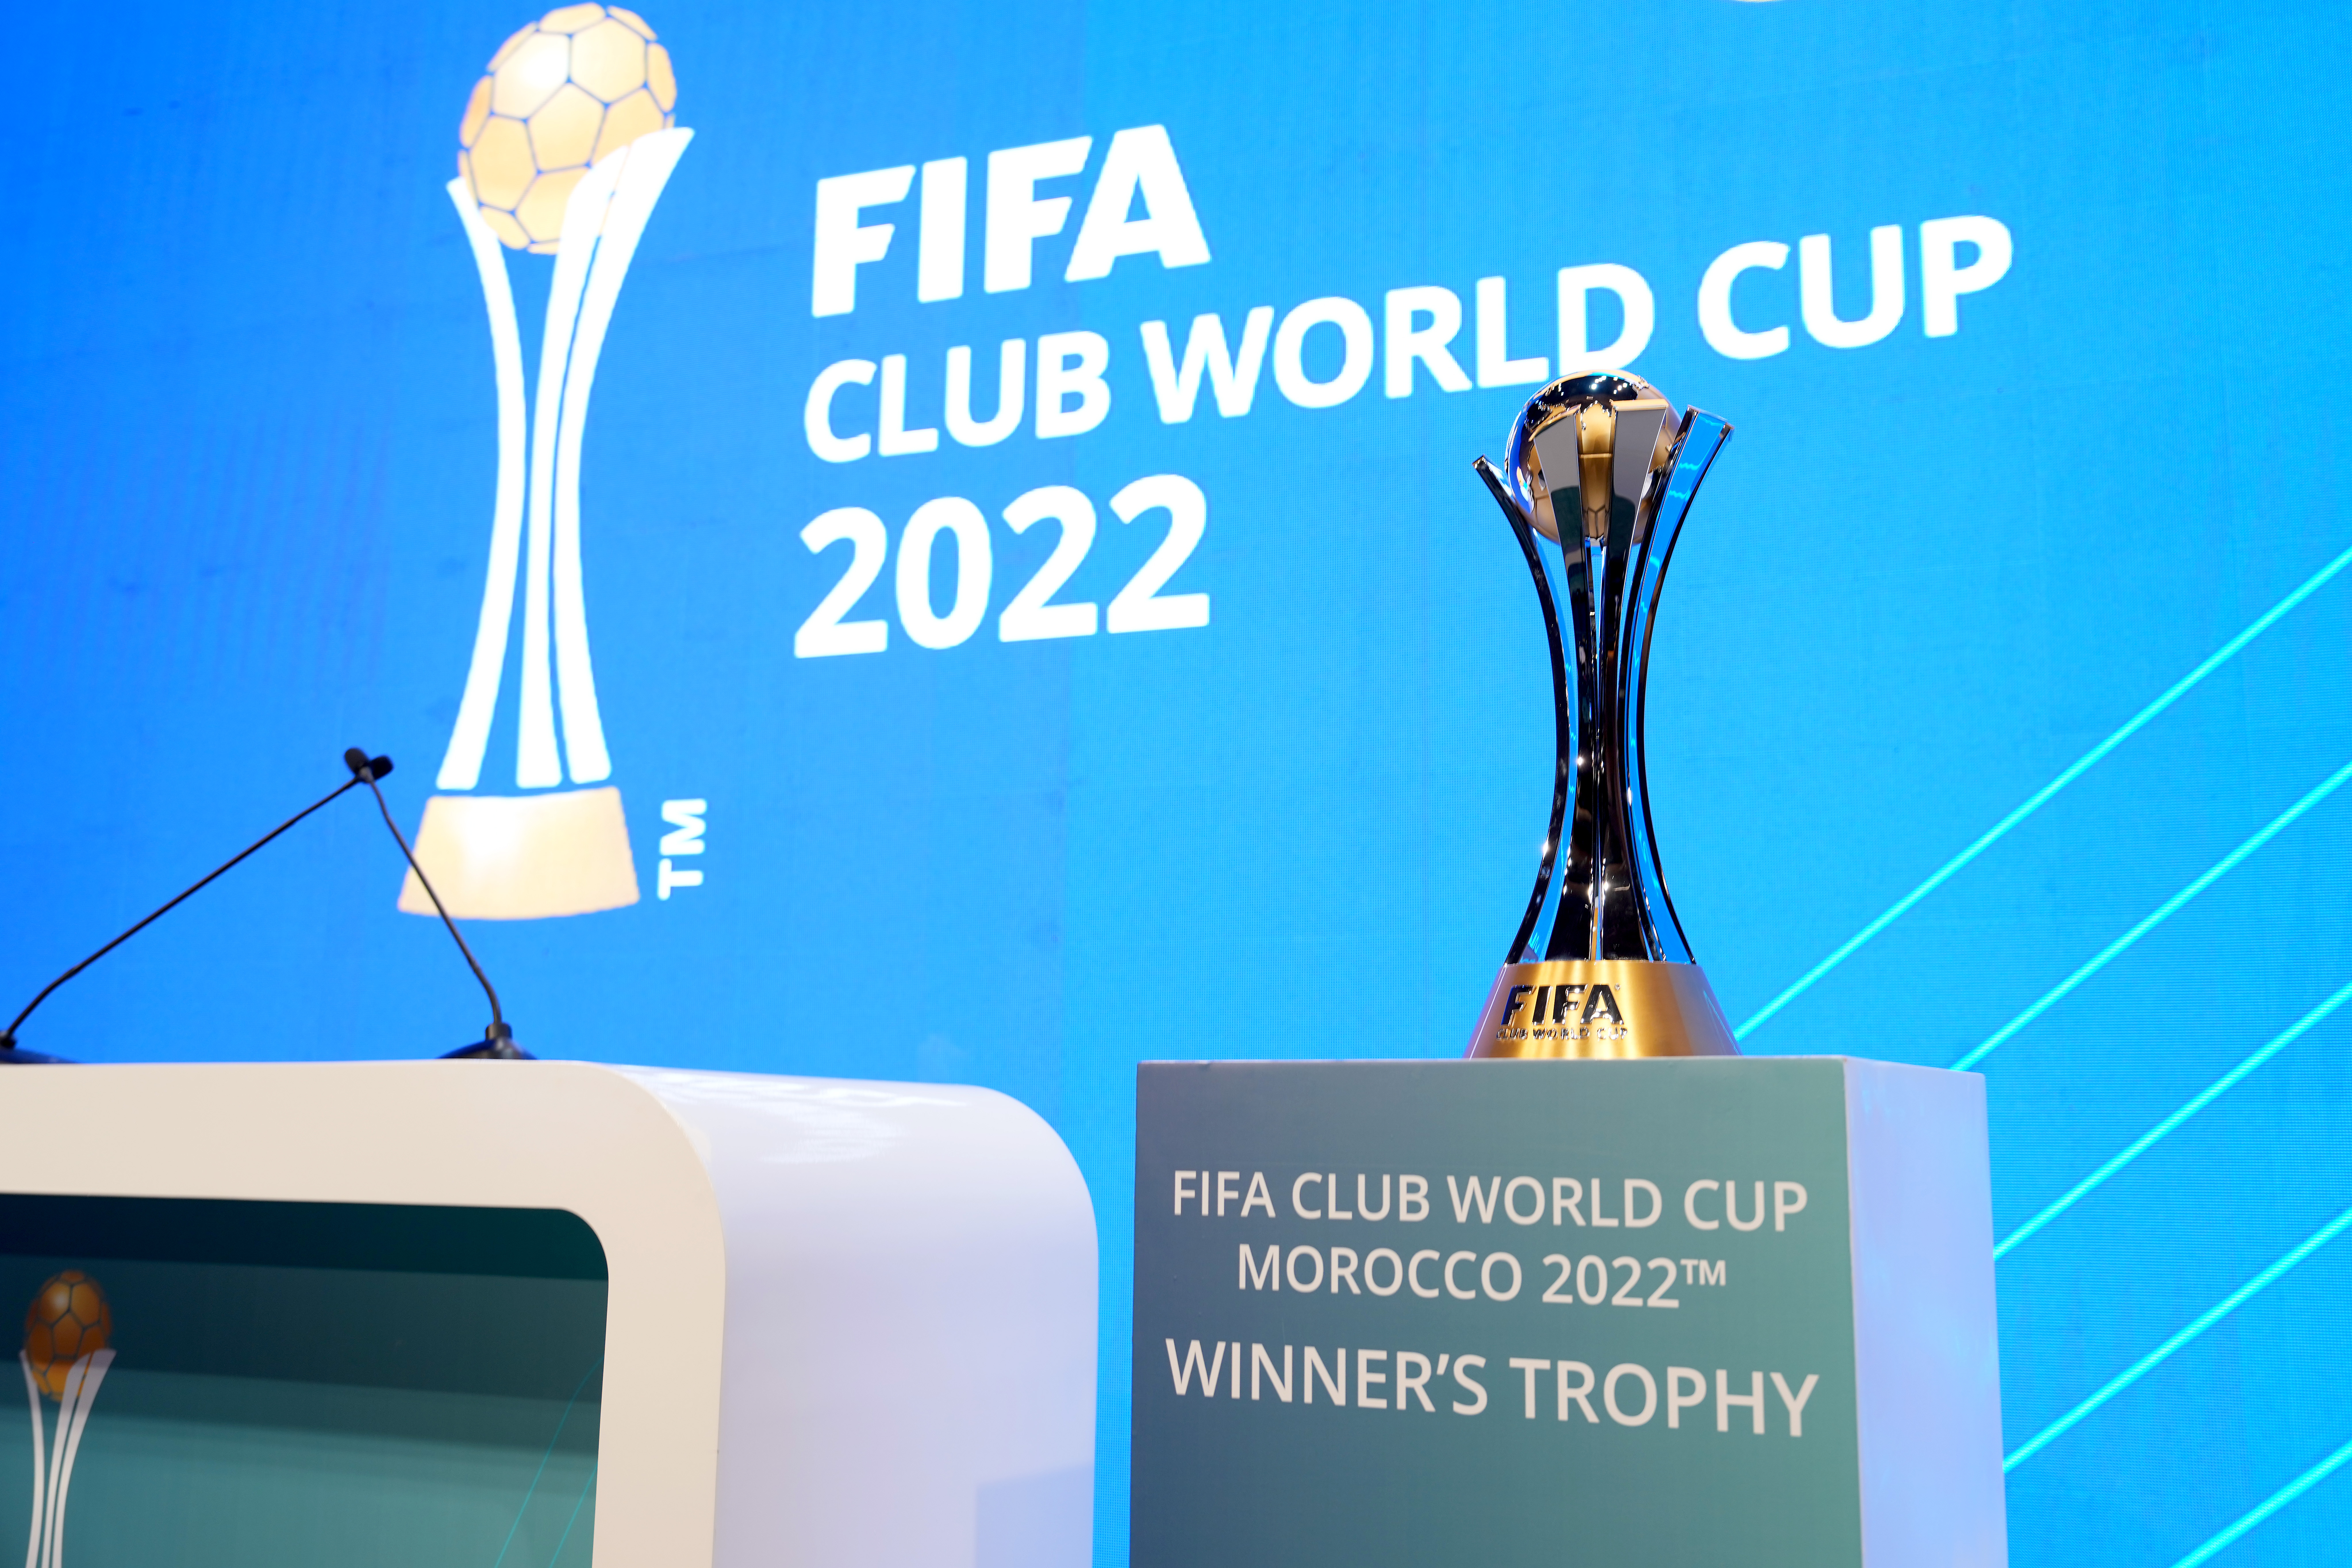 FIFA Club World Cup Morocco 2022 Draw